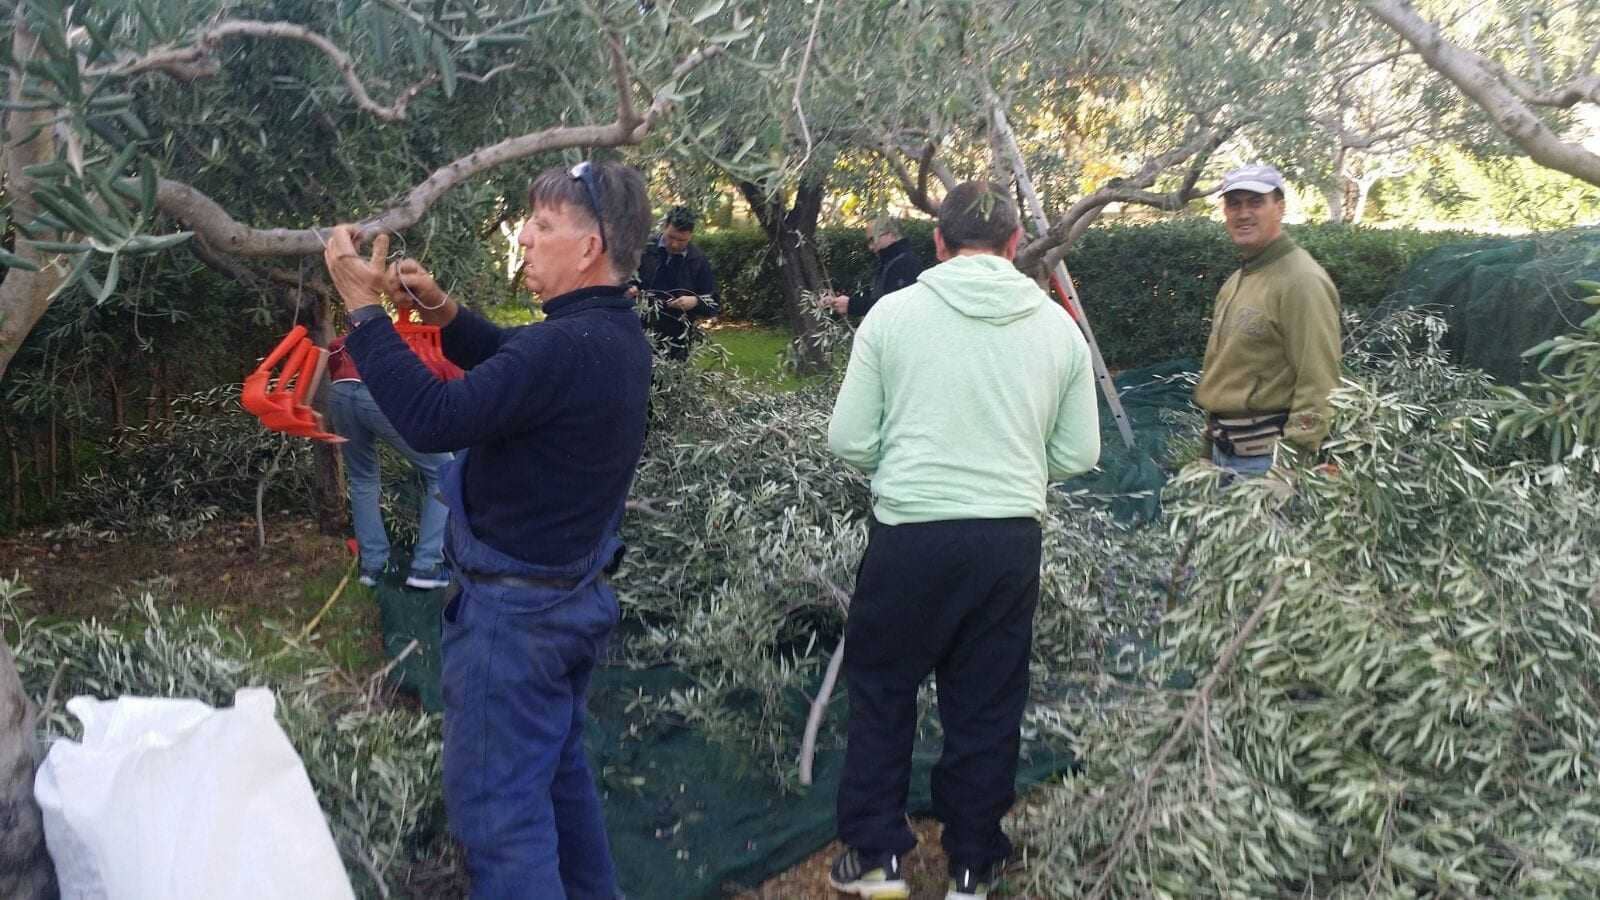 europa-produktion-welt-freiwillige-leihen-eine-hand-in-italienisch-olivenernte-um-den-bedürftigen-olivenöl-zeiten zu helfen